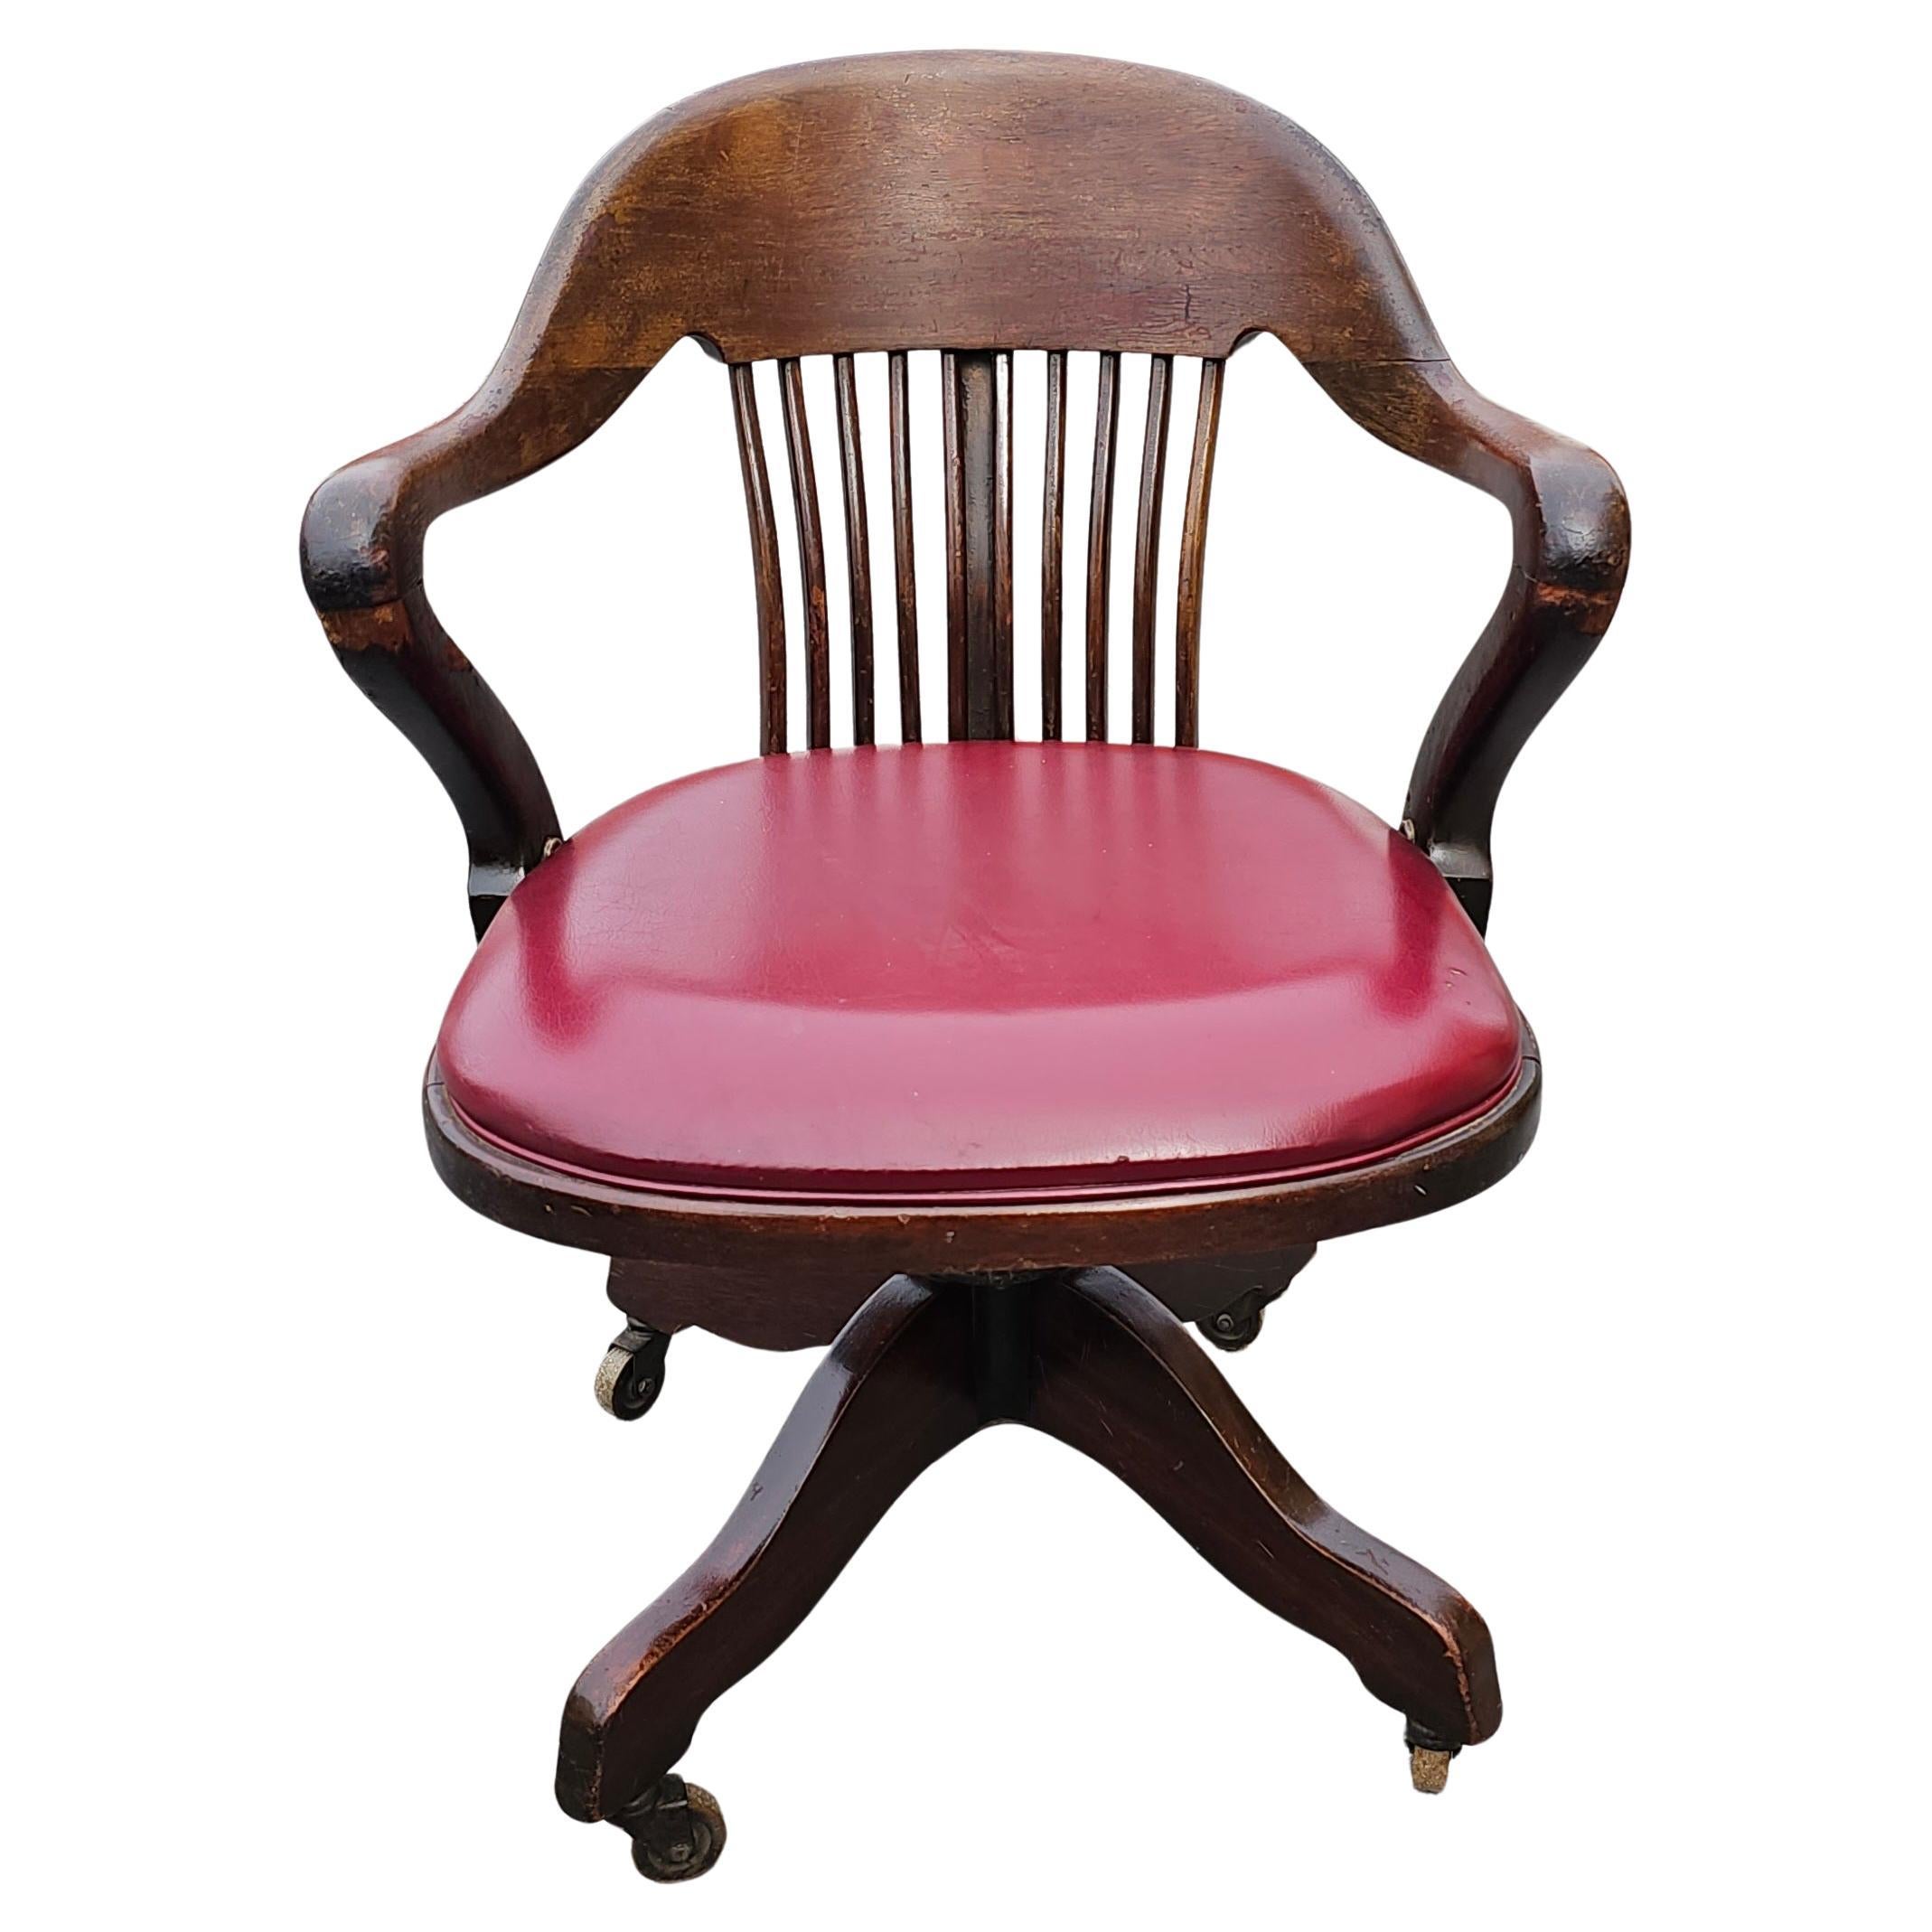 Chaise de banquier du début du 20e siècle en chêne et assise tapissée de vinyle, à roulettes, basculante et pivotante. Mesure 23,5